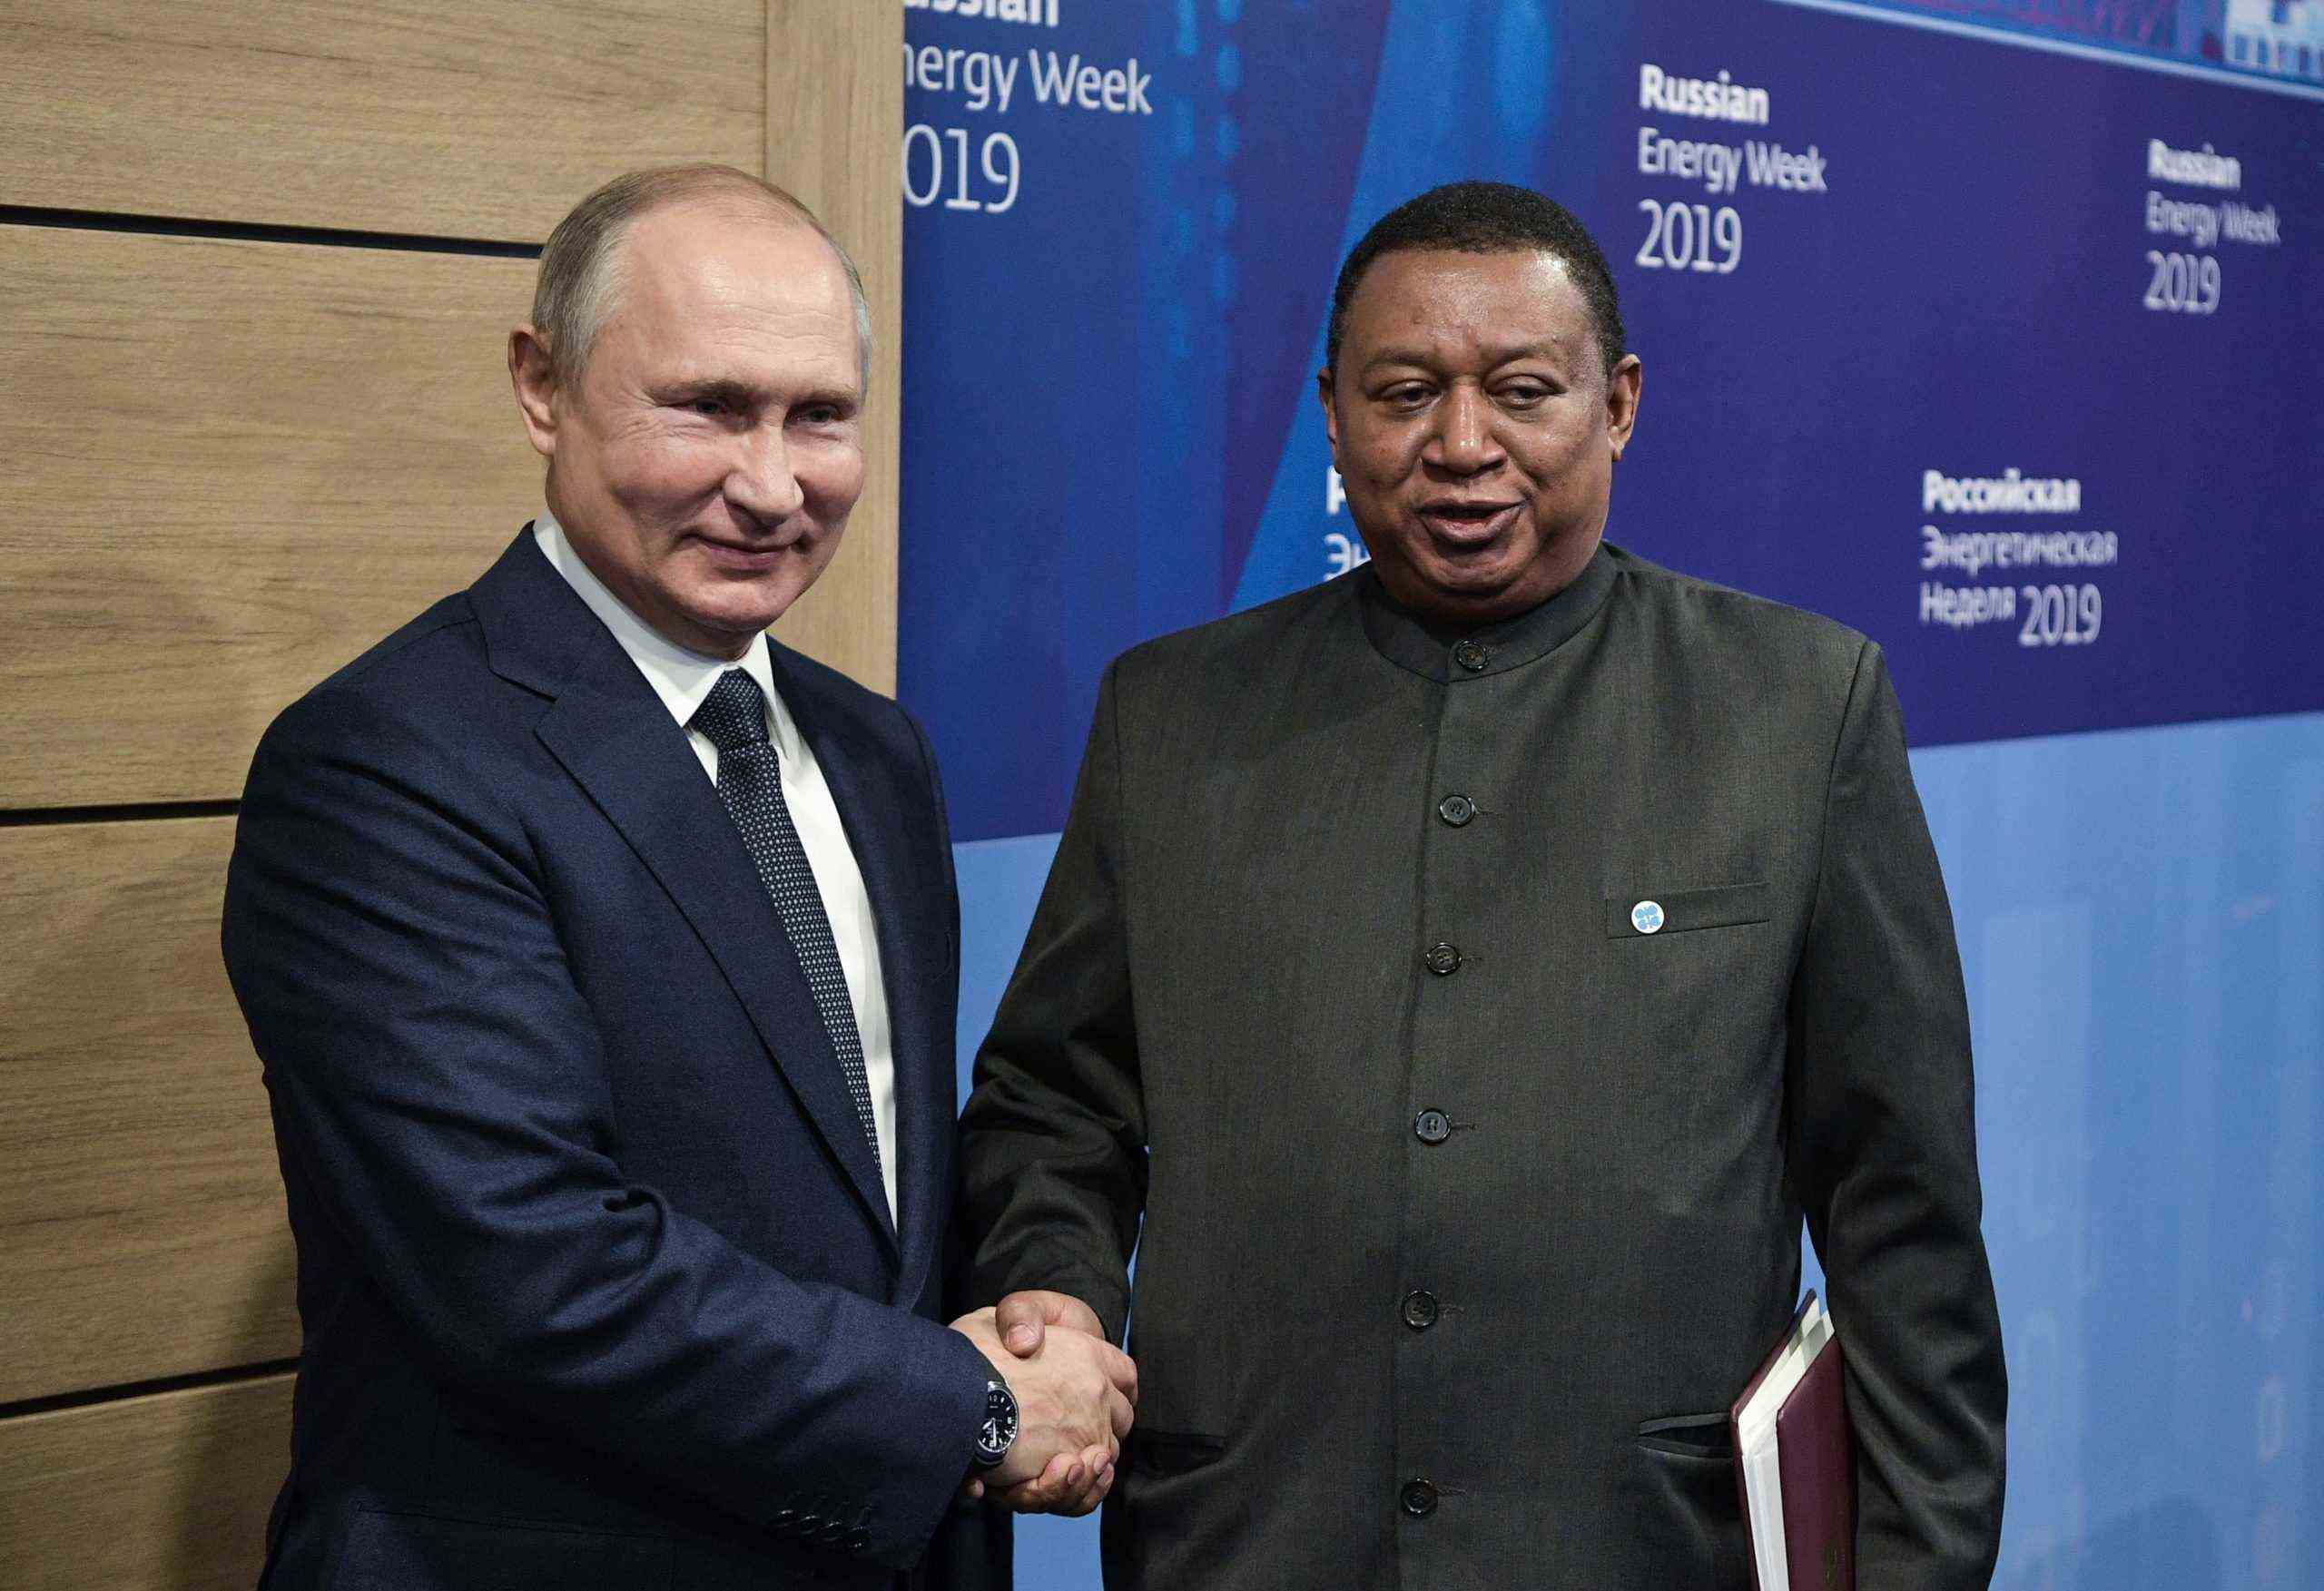 OPEC-Generalsekretär Mohammed Barkindo gibt dem russischen Präsidenten Wladimir Putin während eines Treffens 2019 in Moskau die Hand.  (Alexey Nikolsky/Sputnik/AFP über Getty Images)